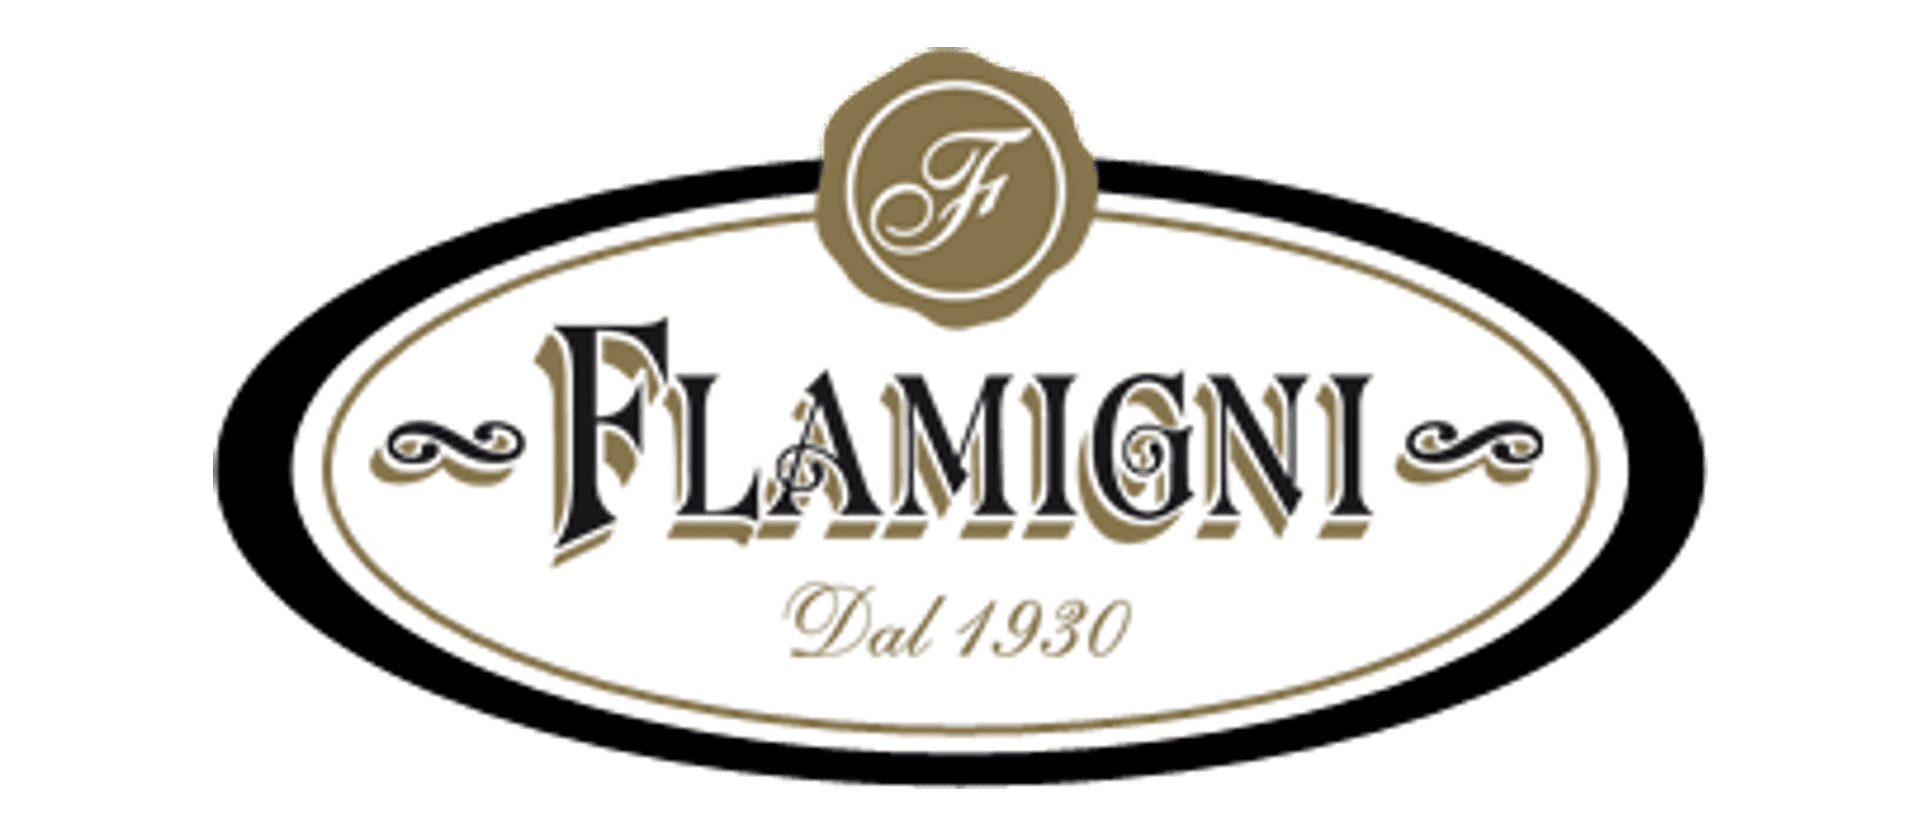 Flamigni ha due sedi produttive. È nata in Romagna, terra di cui esprime la quasi religiosa attenzione al cibo e alla sua cultura.